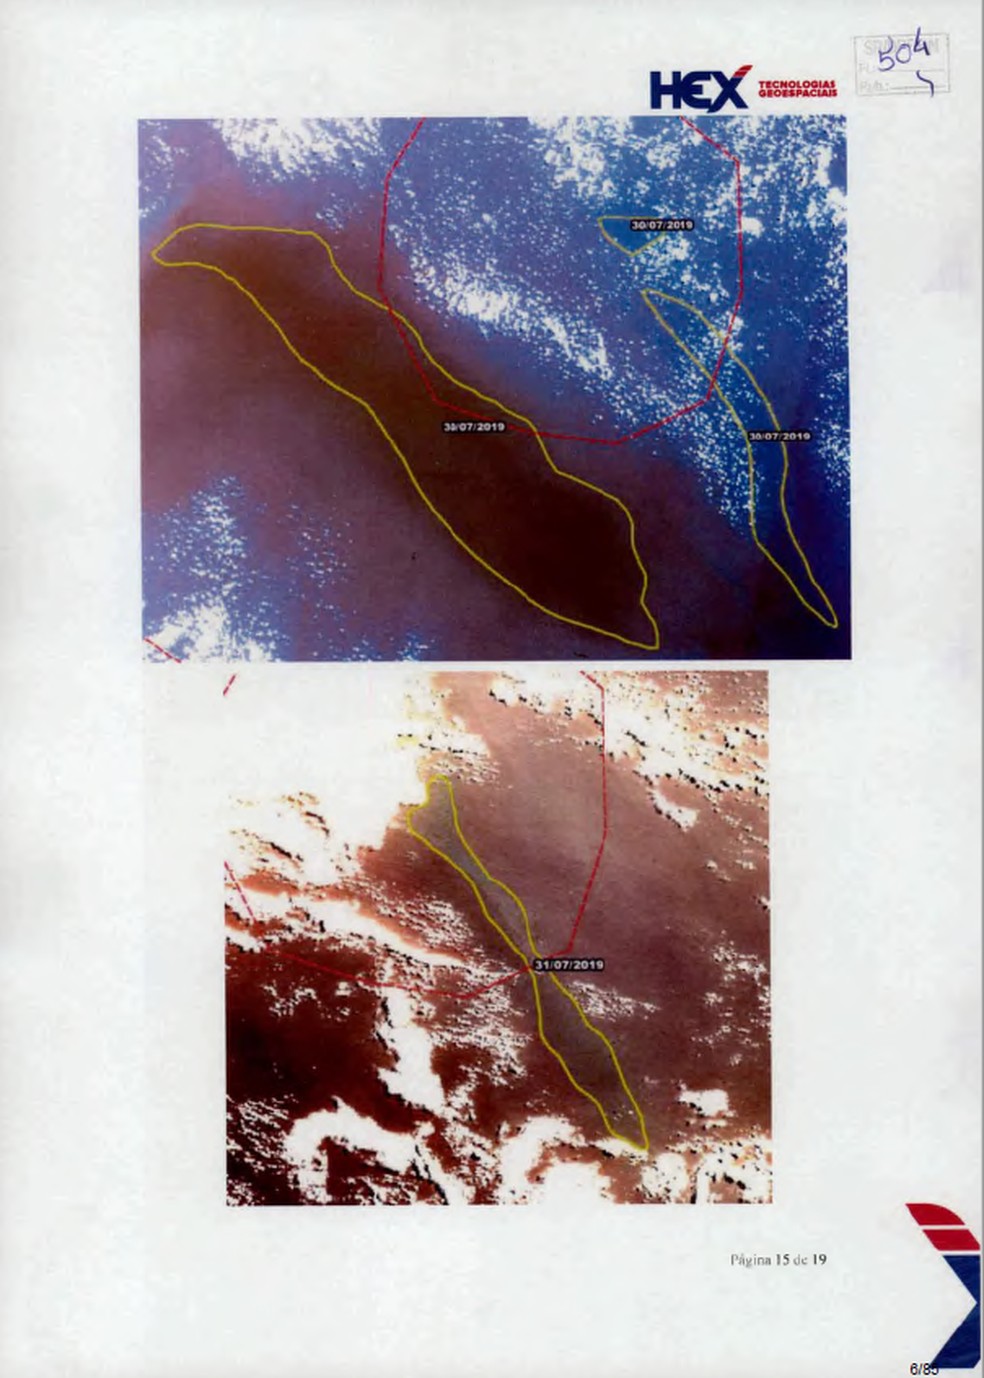 Relatório da empresa Hex Tecnologias Geoespaciais que baseia investigação da Polícia Federal sobre origem de manchas de óleo — Foto: Reprodução